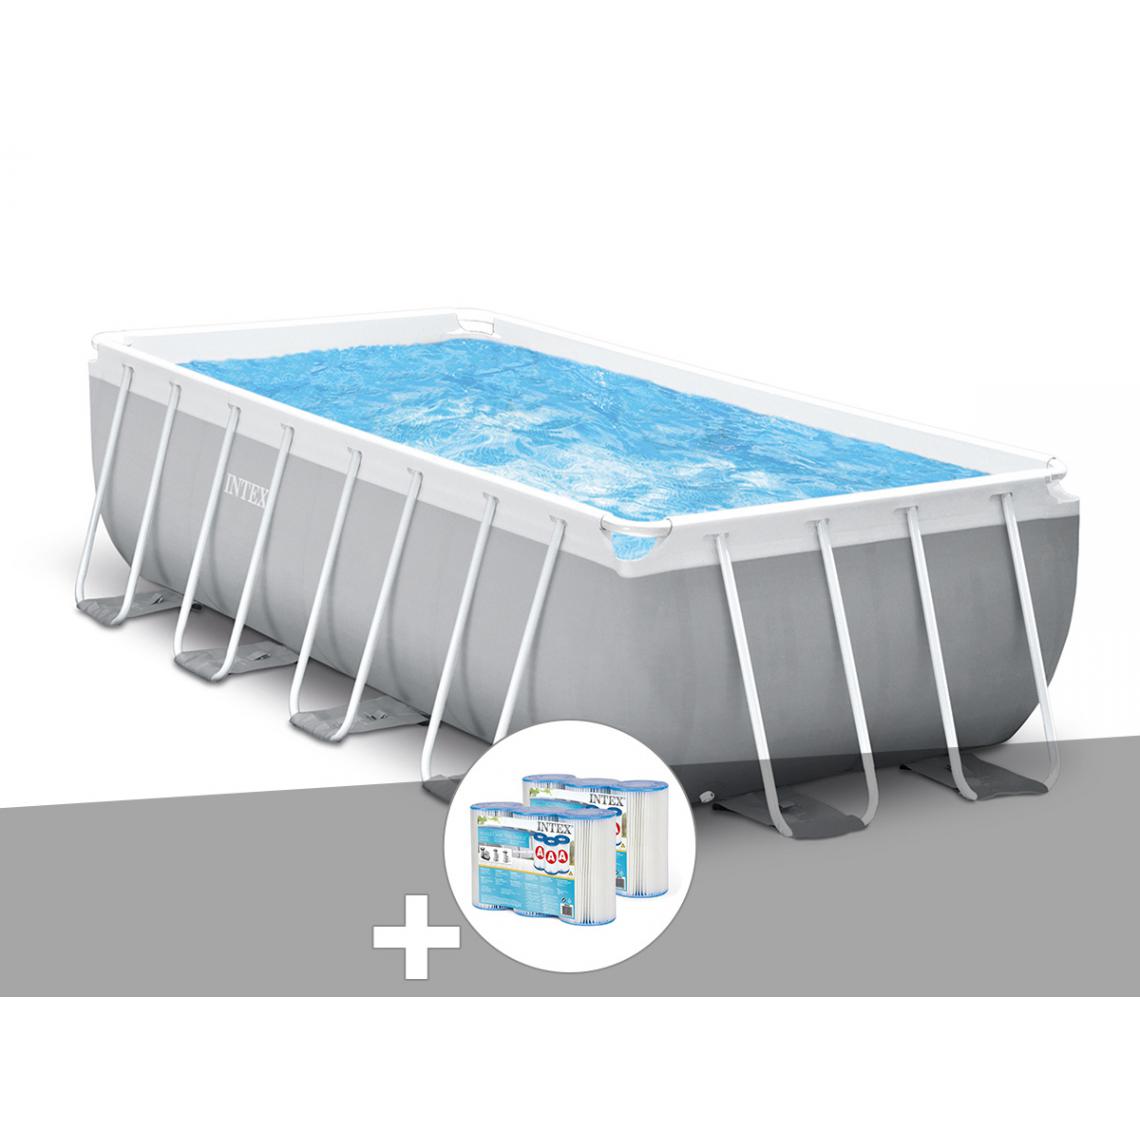 Intex - Kit piscine tubulaire Intex Prism Frame rectangulaire 4,00 x 2,00 x 1,22 m + 6 cartouches de filtration - Piscine Tubulaire